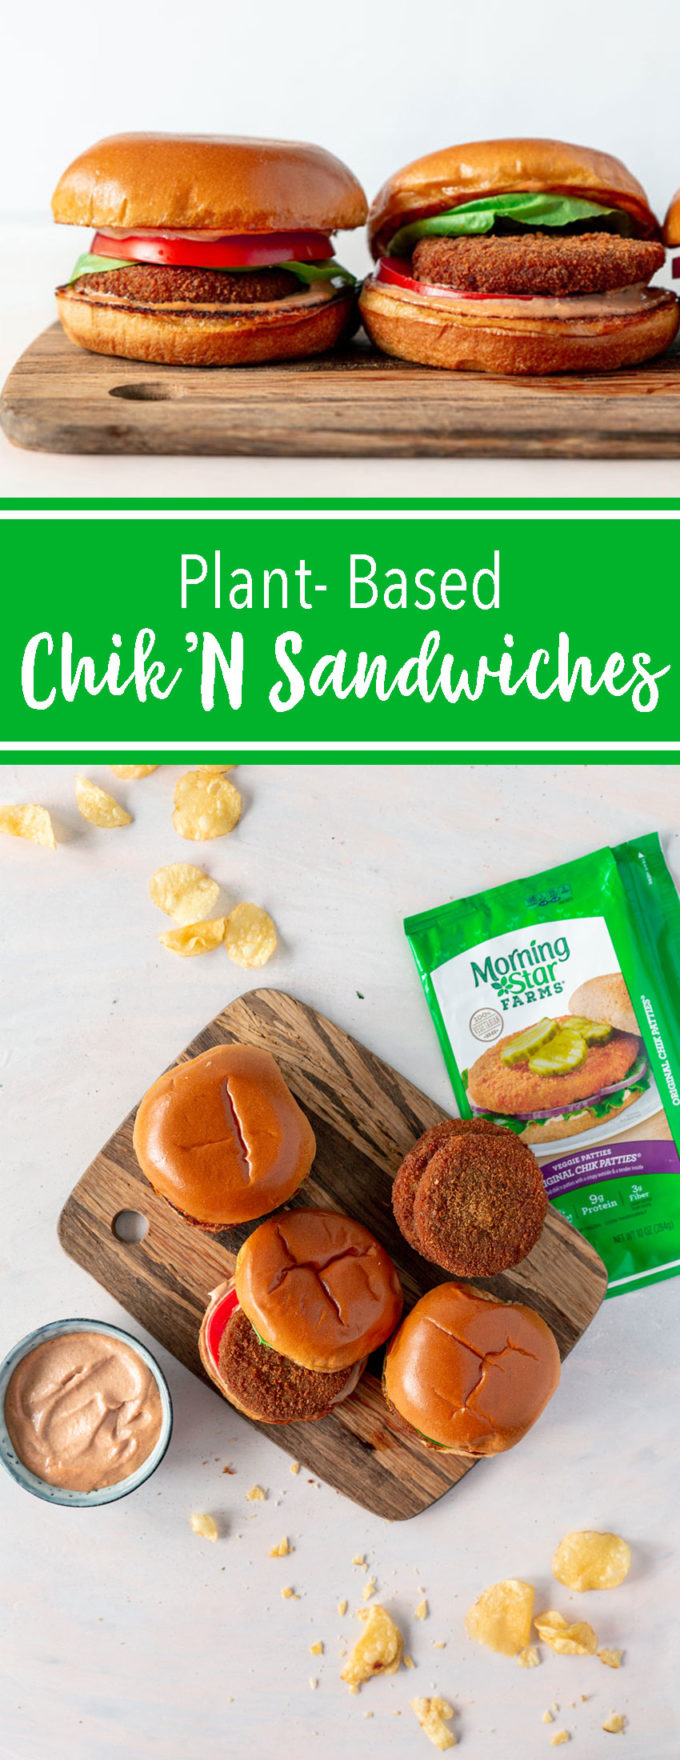 Plant based chicken sandwiches